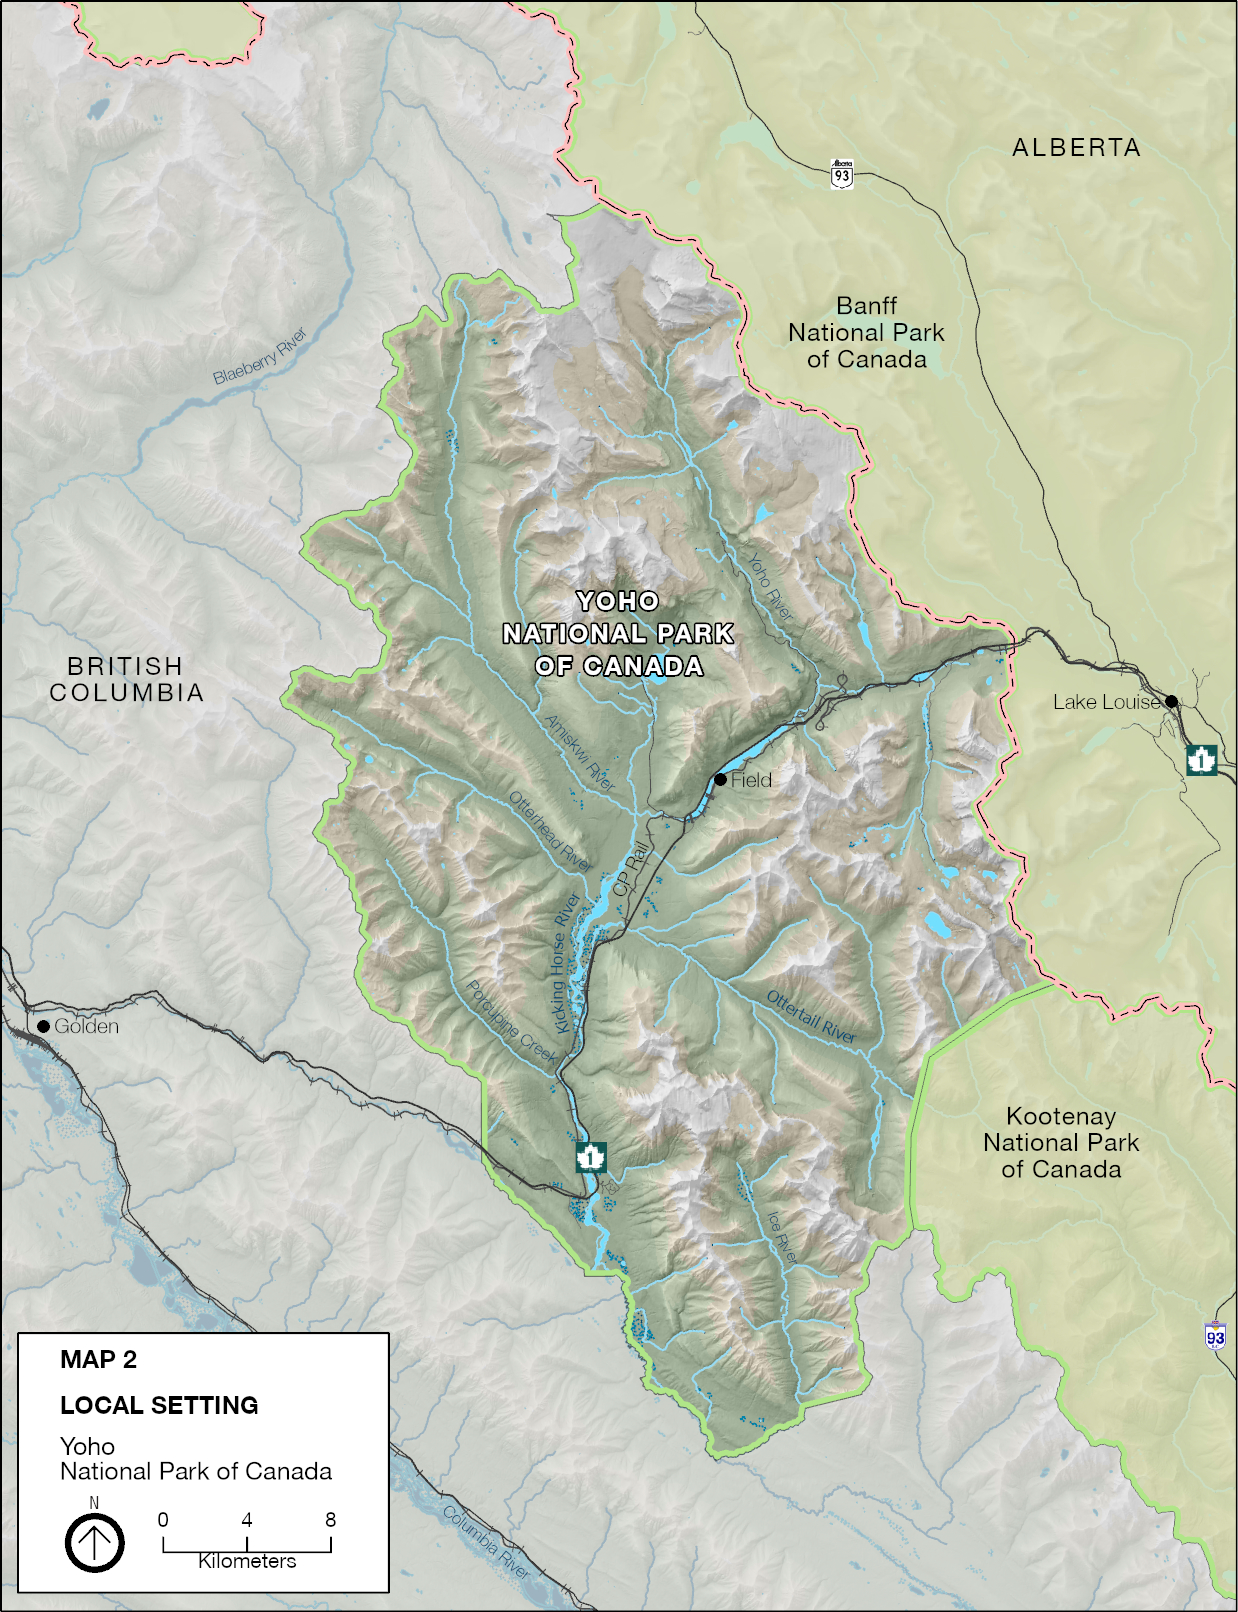 Map 2: Yoho National Park site map